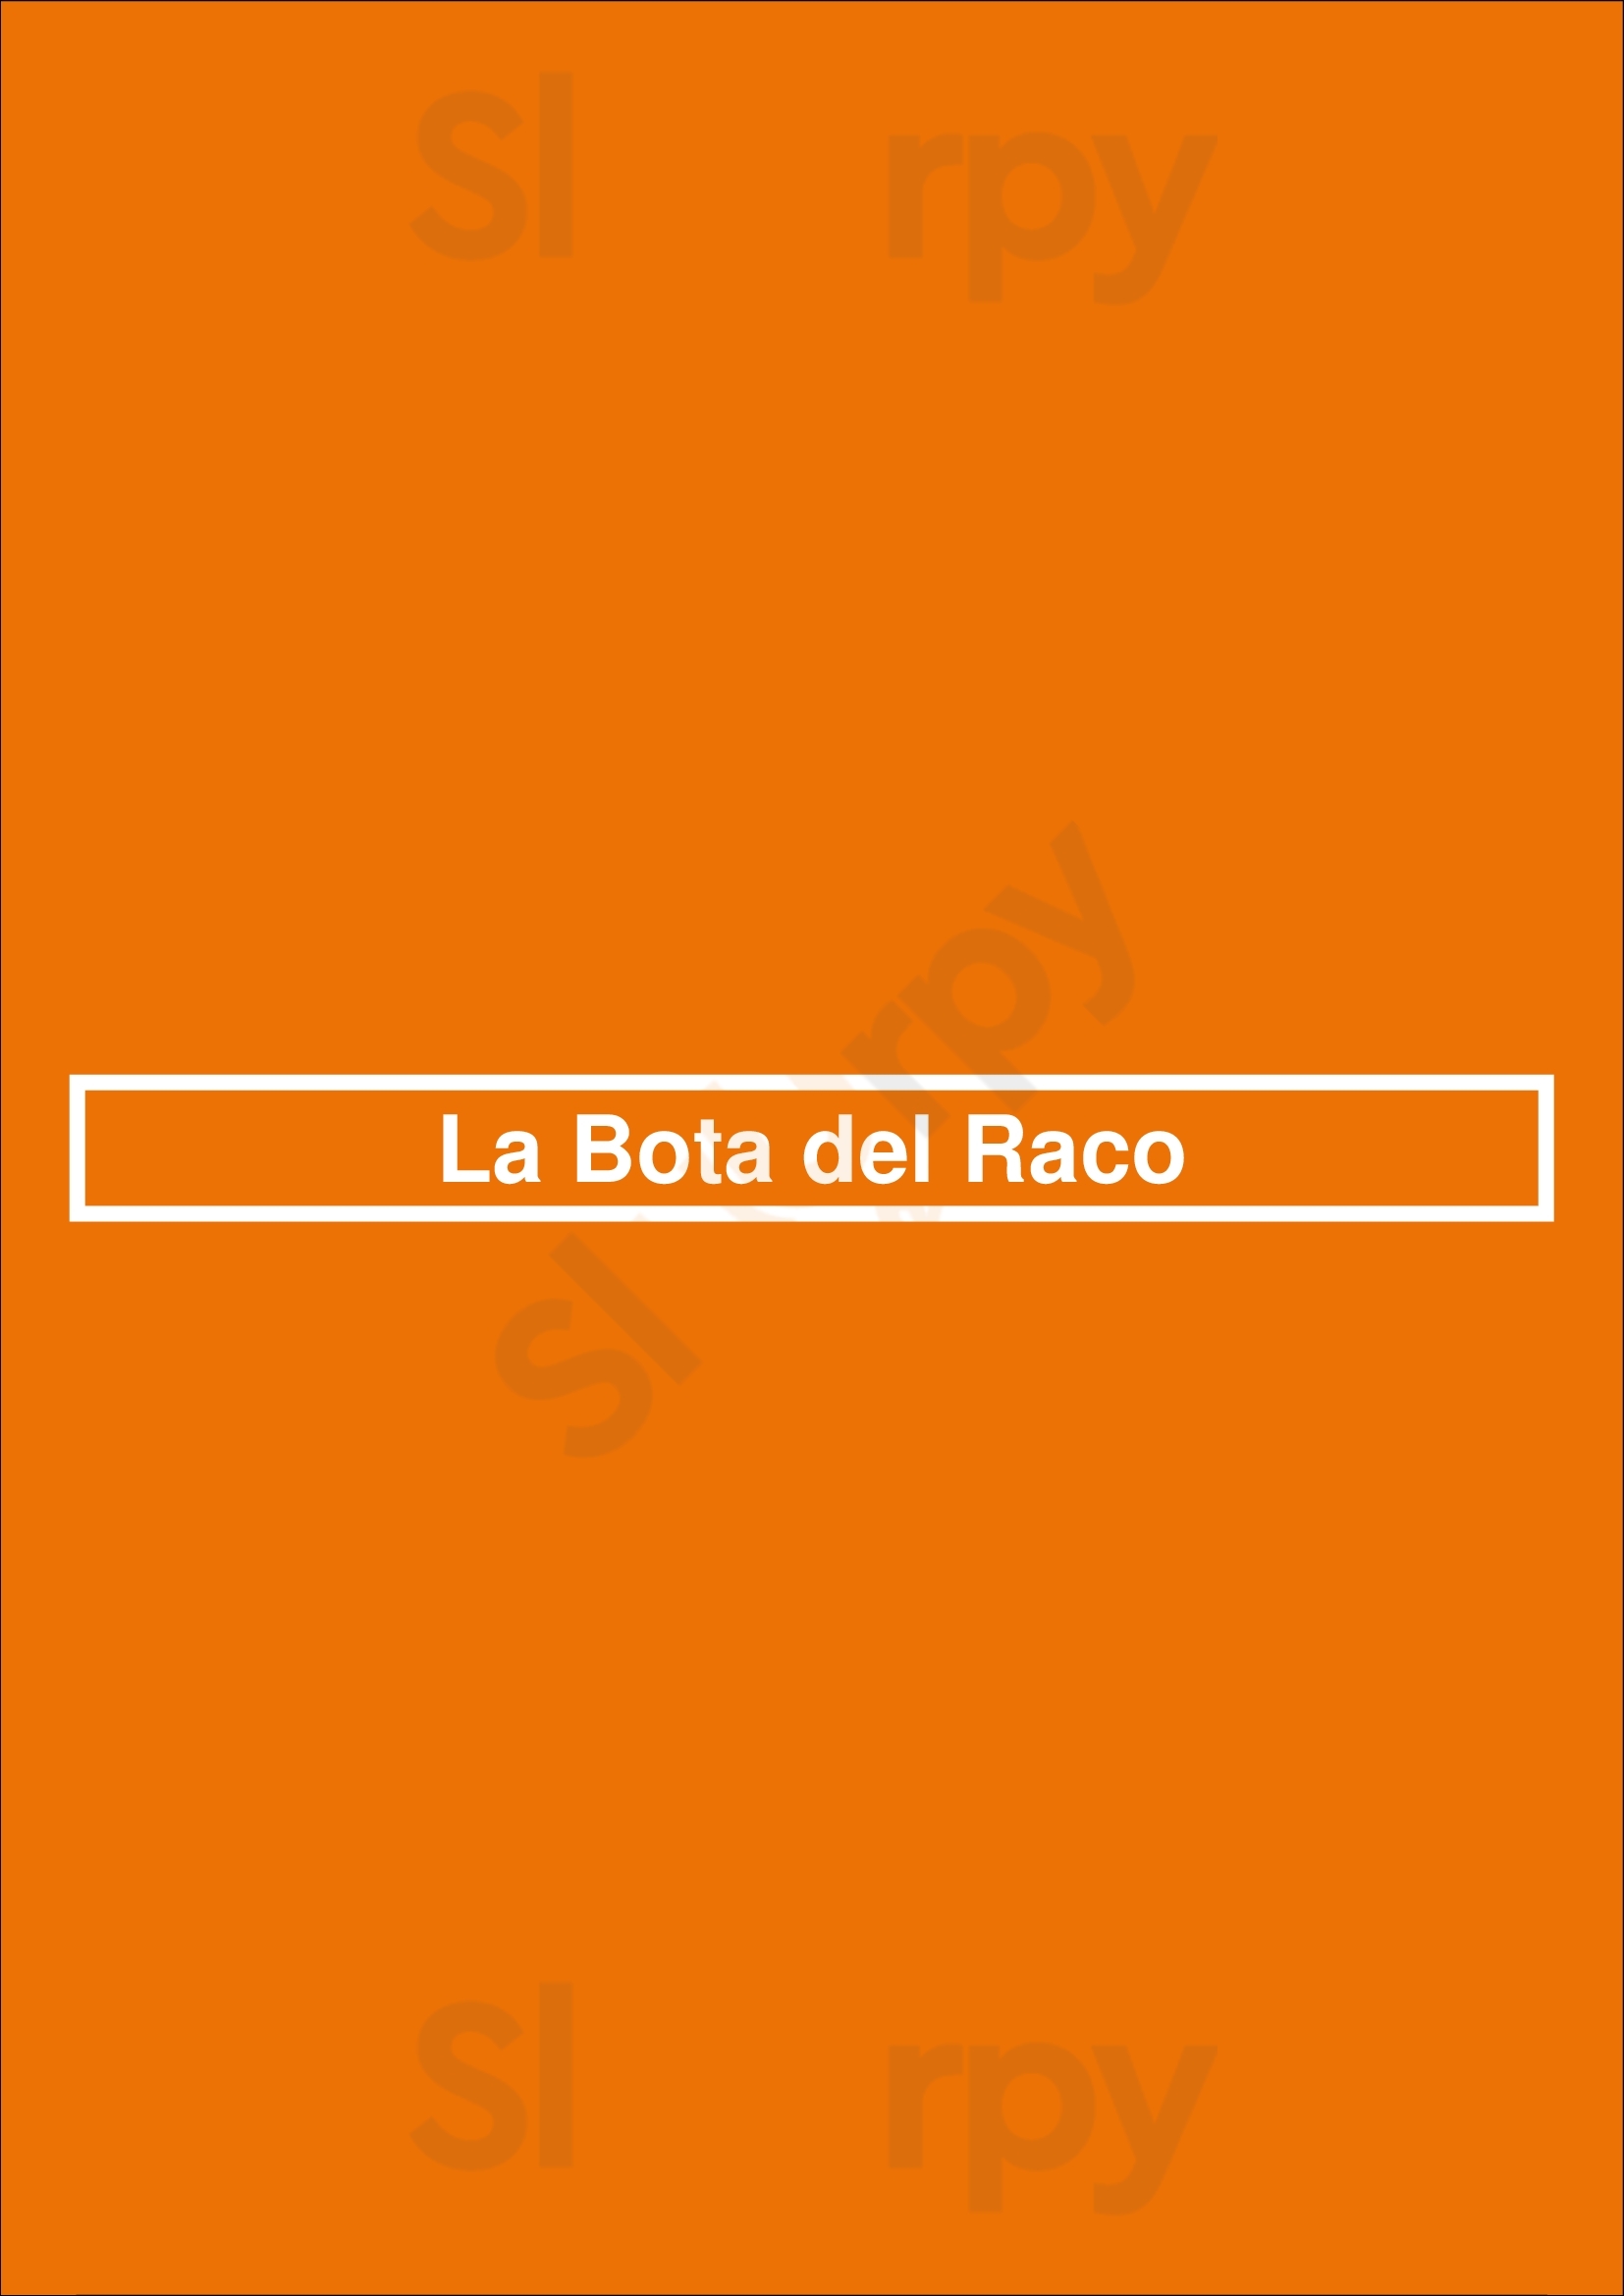 La Bota Del Raco Vilafranca del Penedès Menu - 1